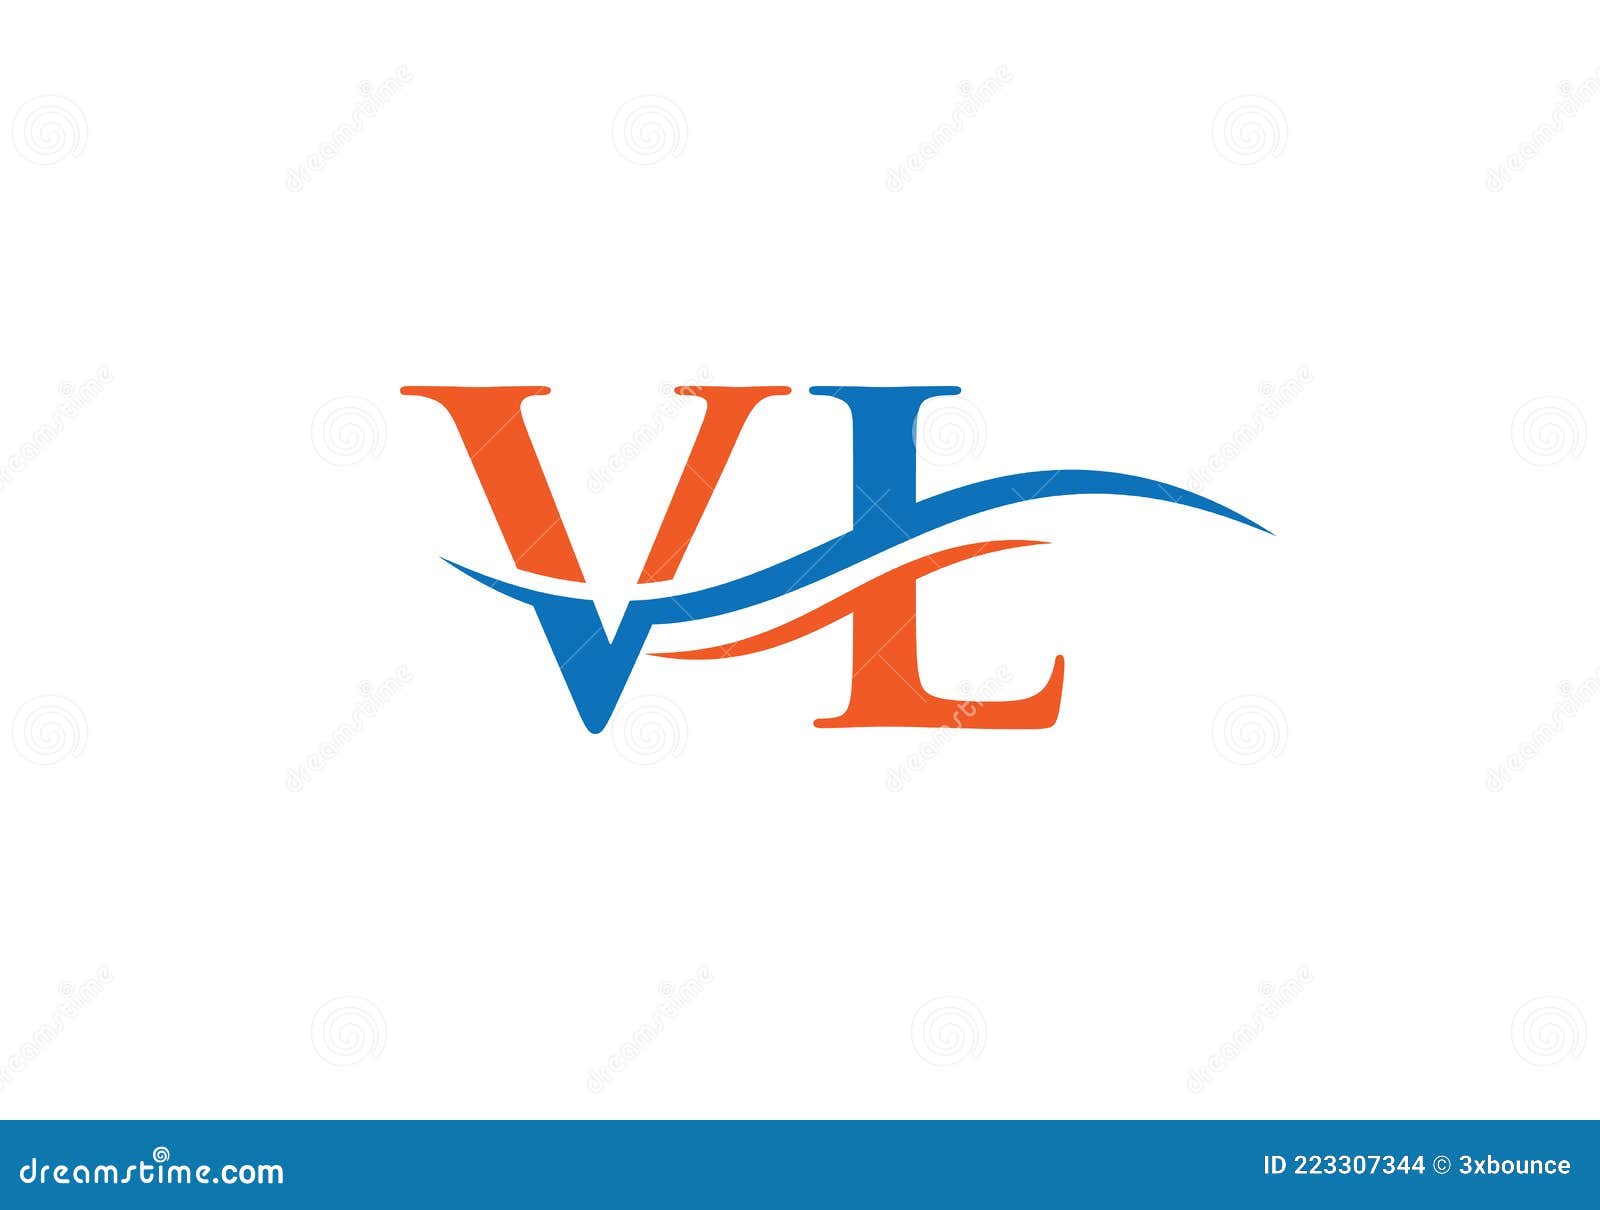 Initial LV letter linked logo vector template. Swoosh letter LV